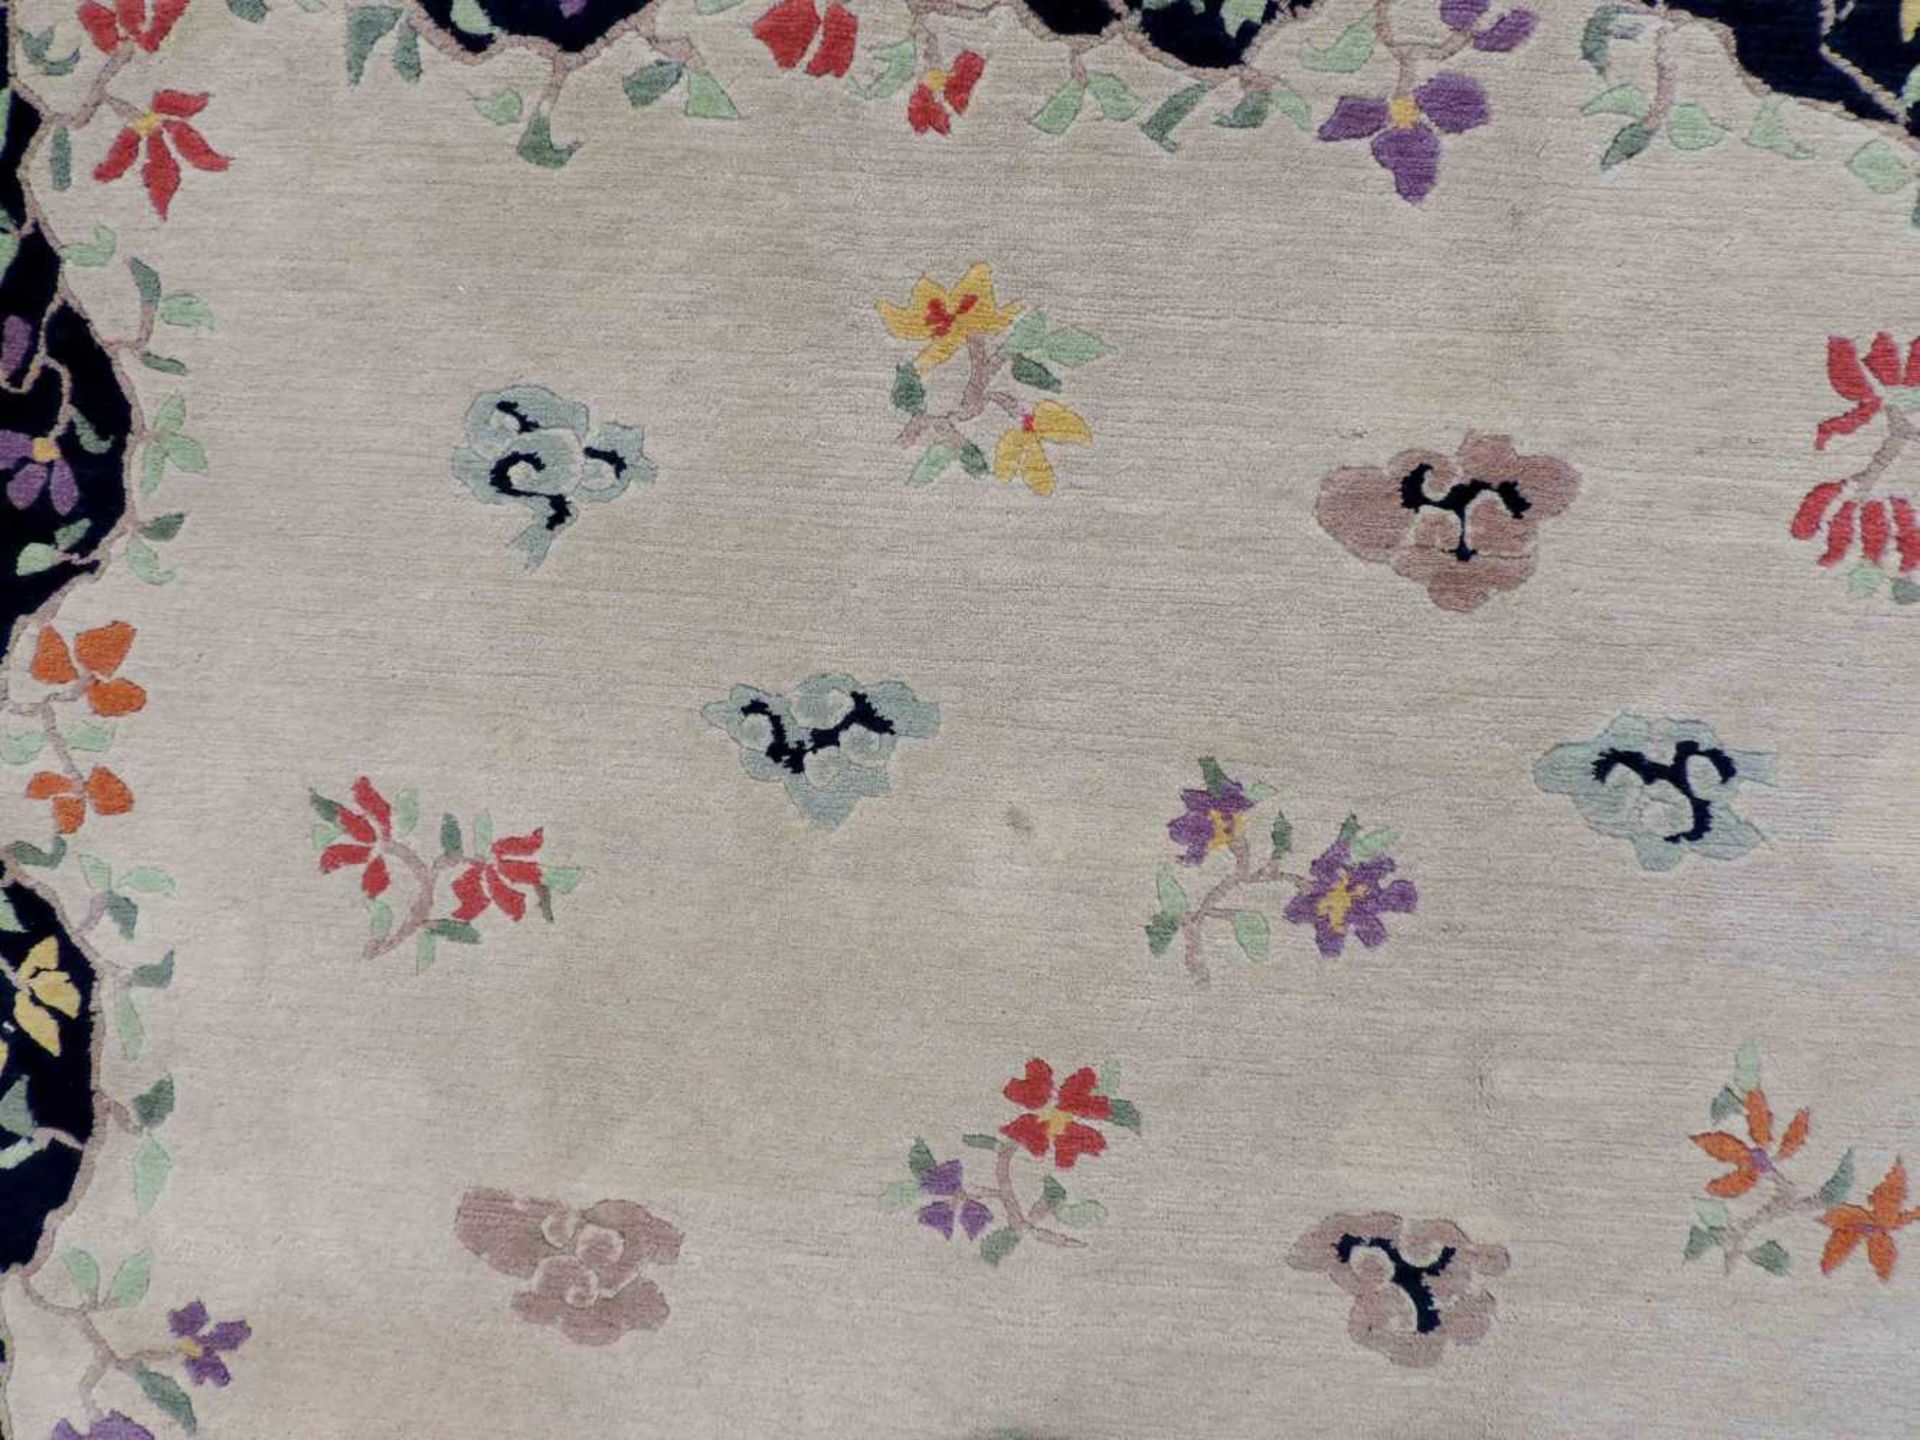 Blütenteppich China. 245 cm x 167 cm. Handgeknüpft, Wolle auf Baumwolle. Blossoms carpet China. - Bild 9 aus 12